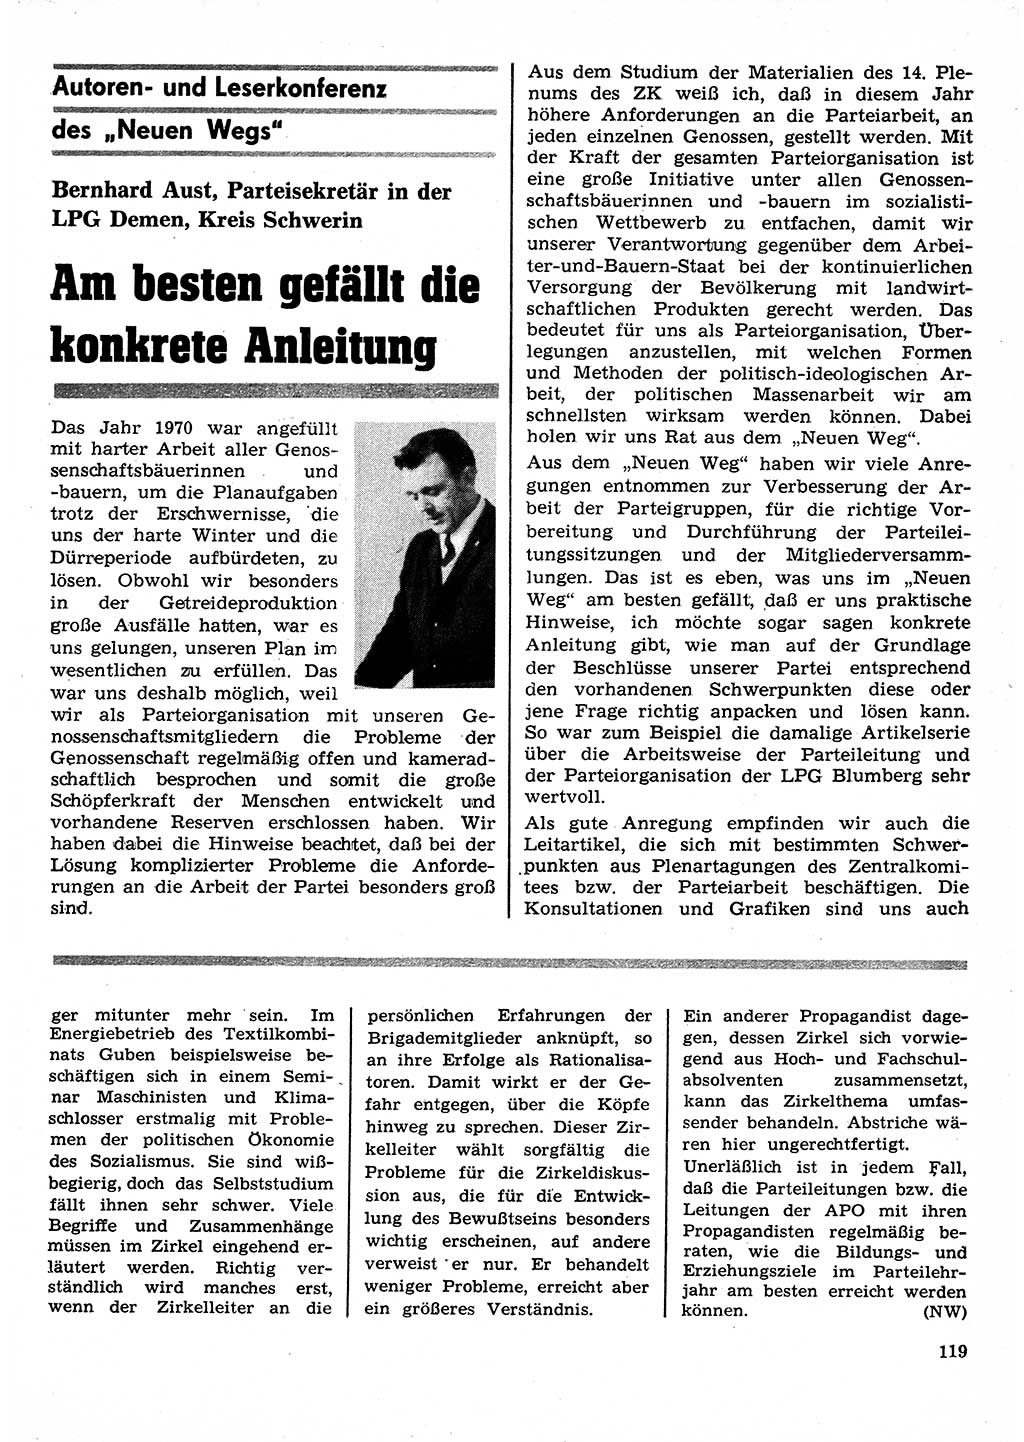 Neuer Weg (NW), Organ des Zentralkomitees (ZK) der SED (Sozialistische Einheitspartei Deutschlands) für Fragen des Parteilebens, 26. Jahrgang [Deutsche Demokratische Republik (DDR)] 1971, Seite 119 (NW ZK SED DDR 1971, S. 119)